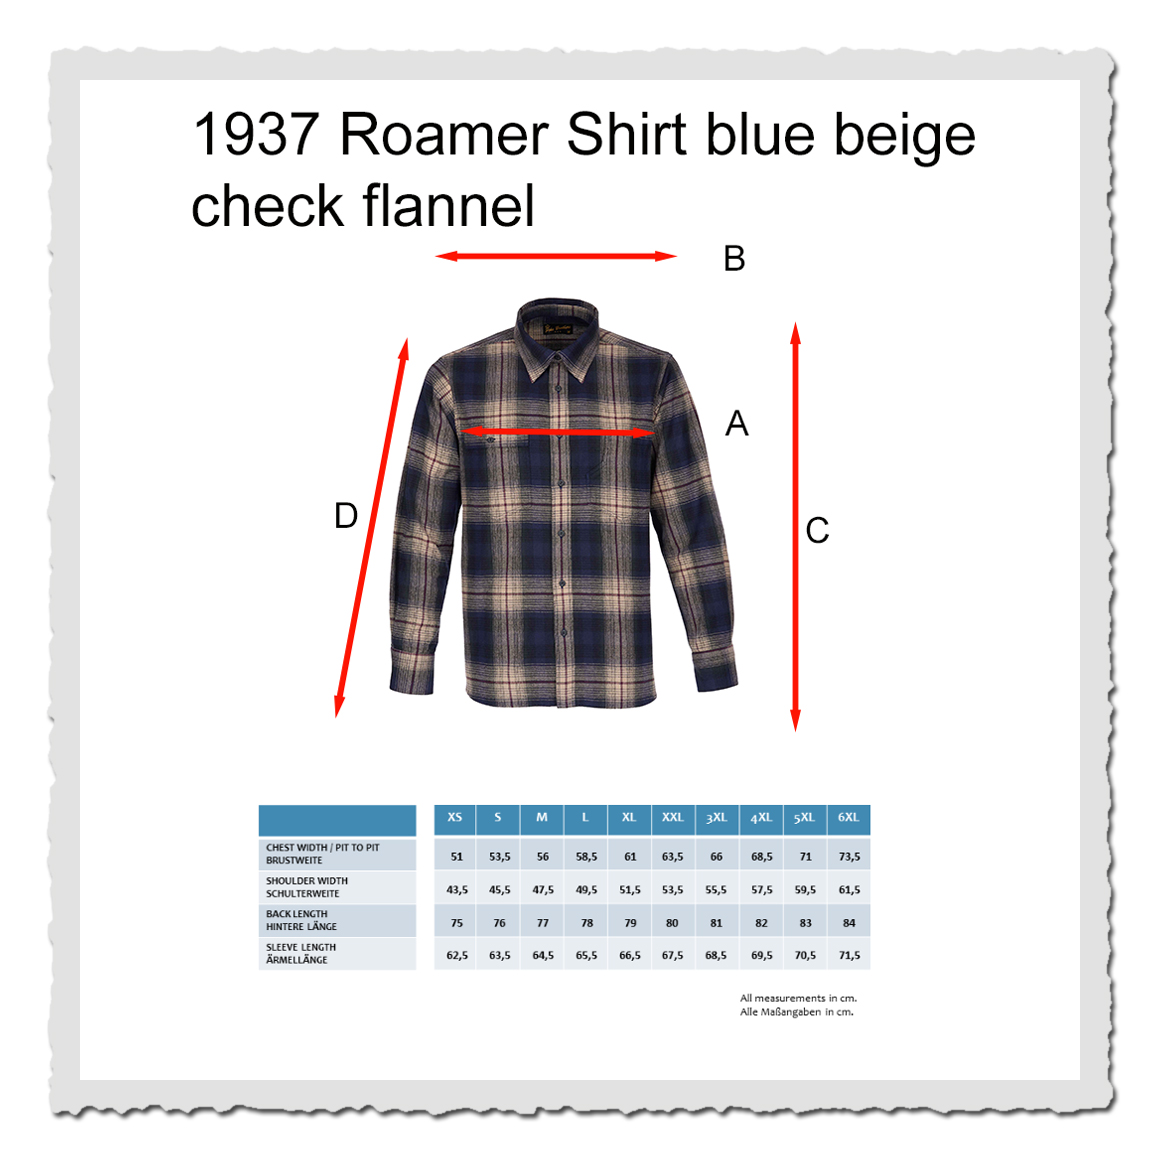 1937 Roamer Shirt blue beige check